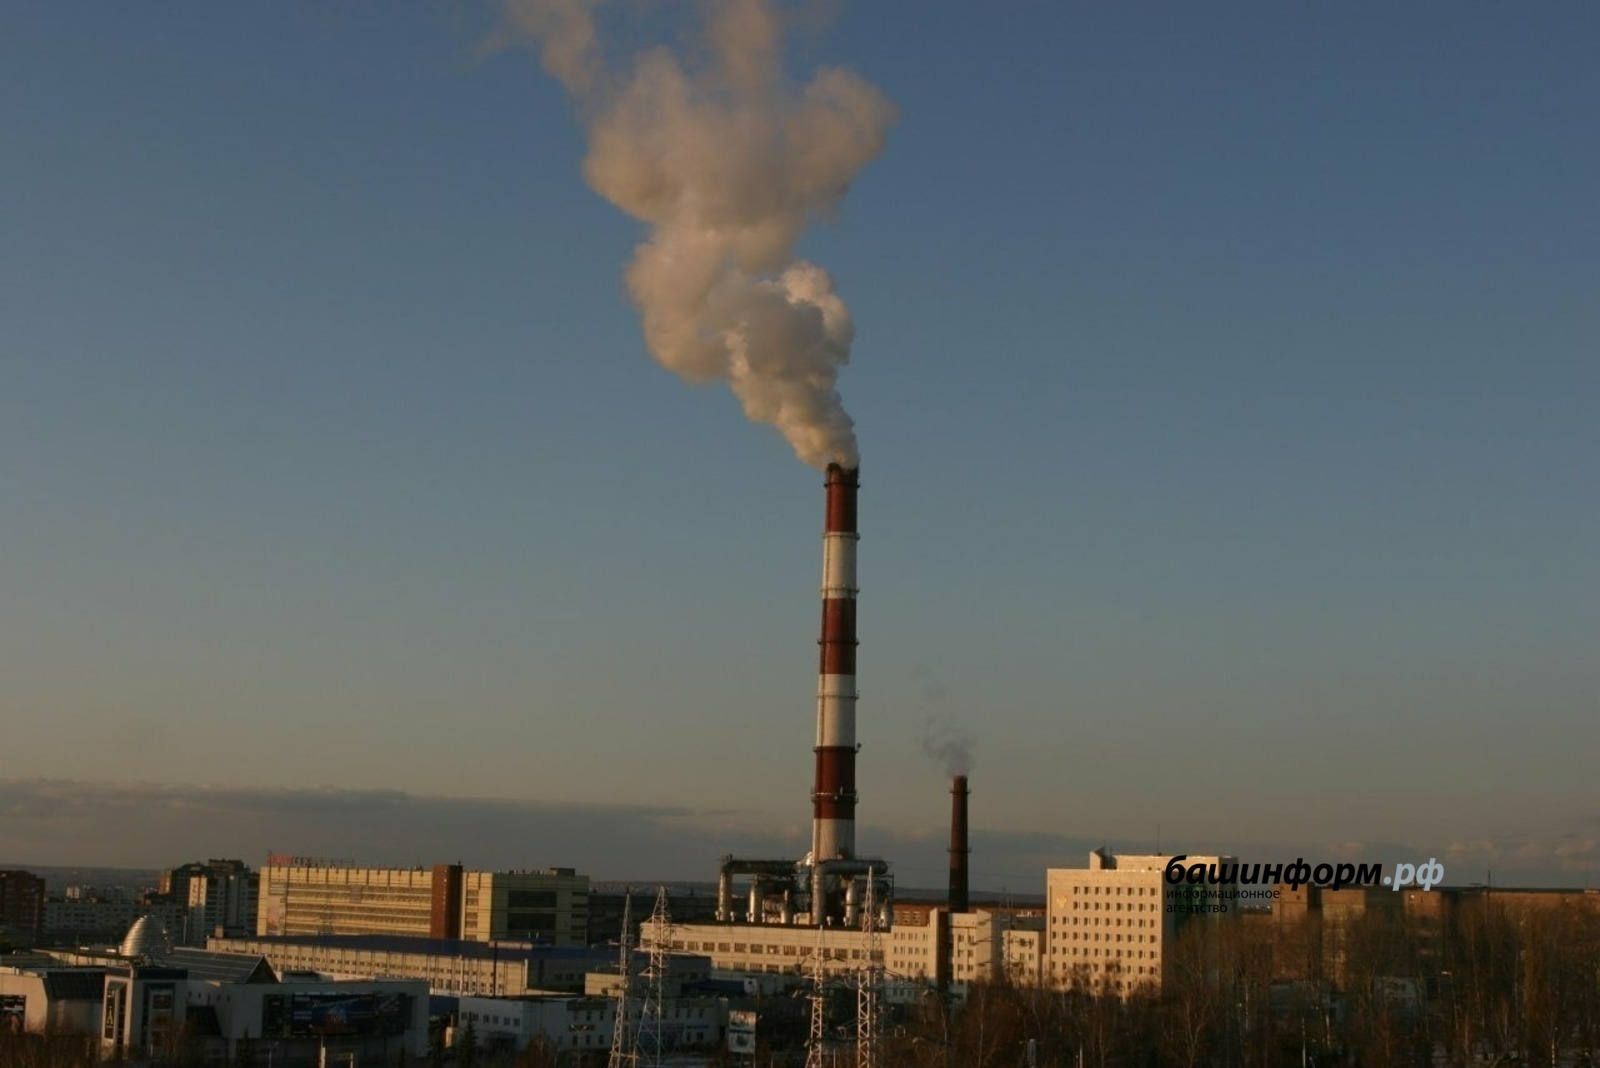 БСК сократила объем выбросов в атмосферу на 217 тонн в Башкирии